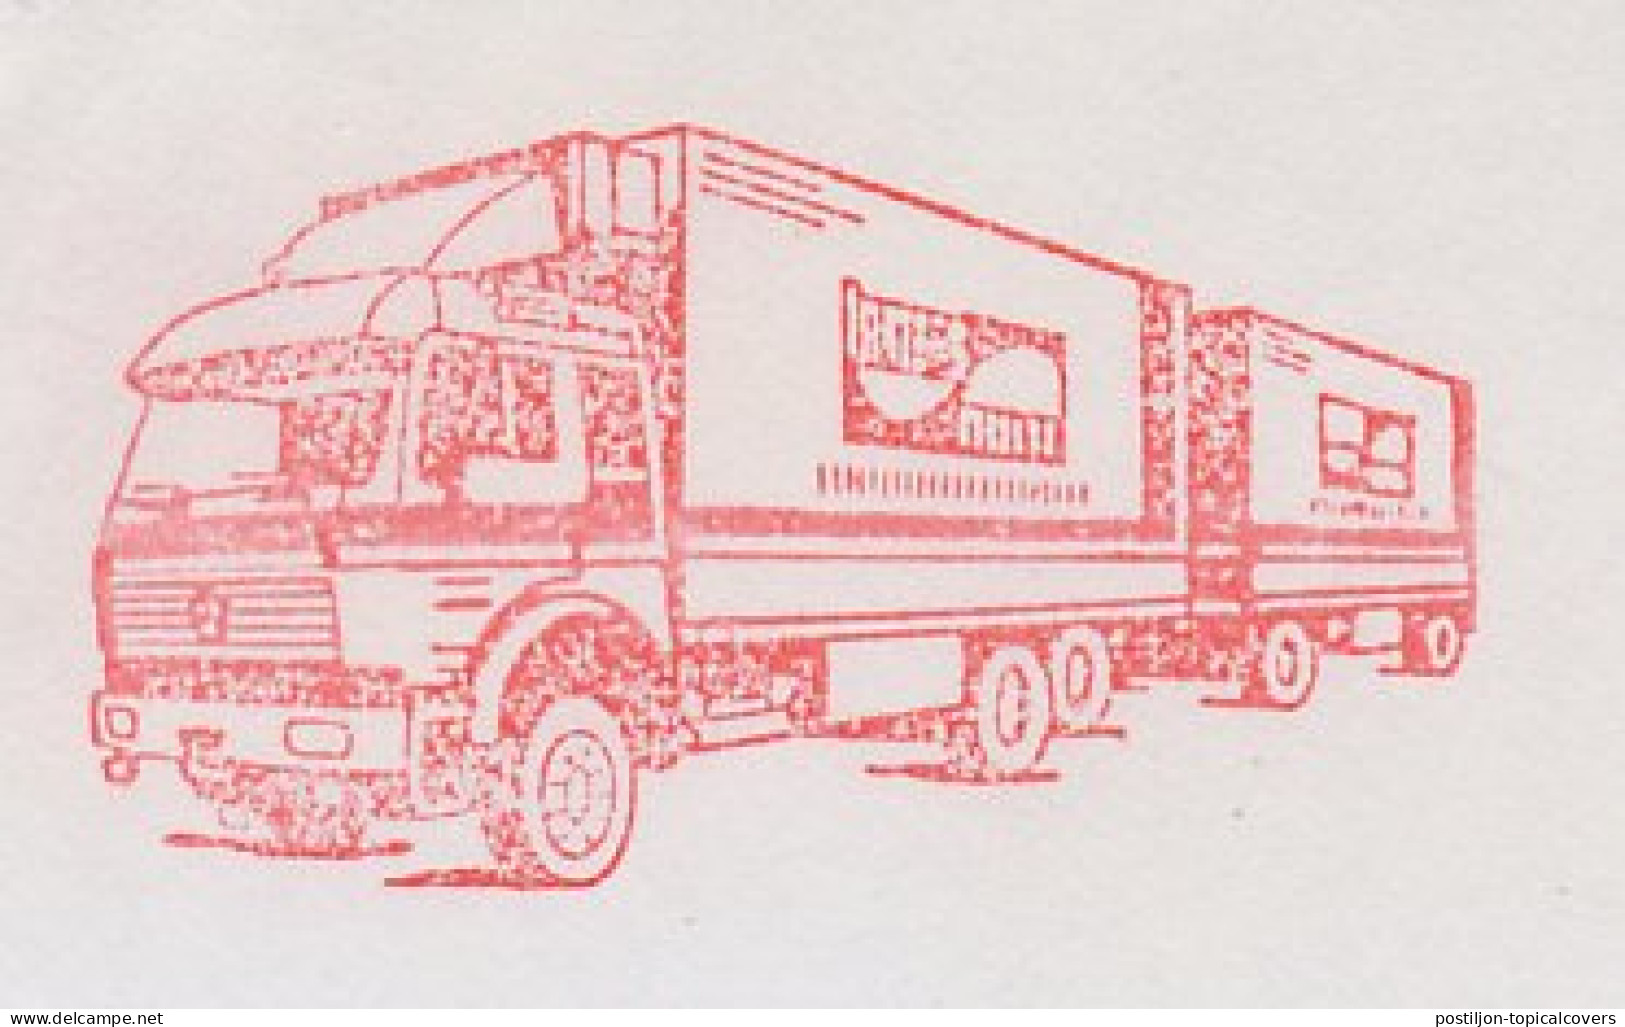 Meter Cut Netherlands 1985 Truck - Vrachtwagens